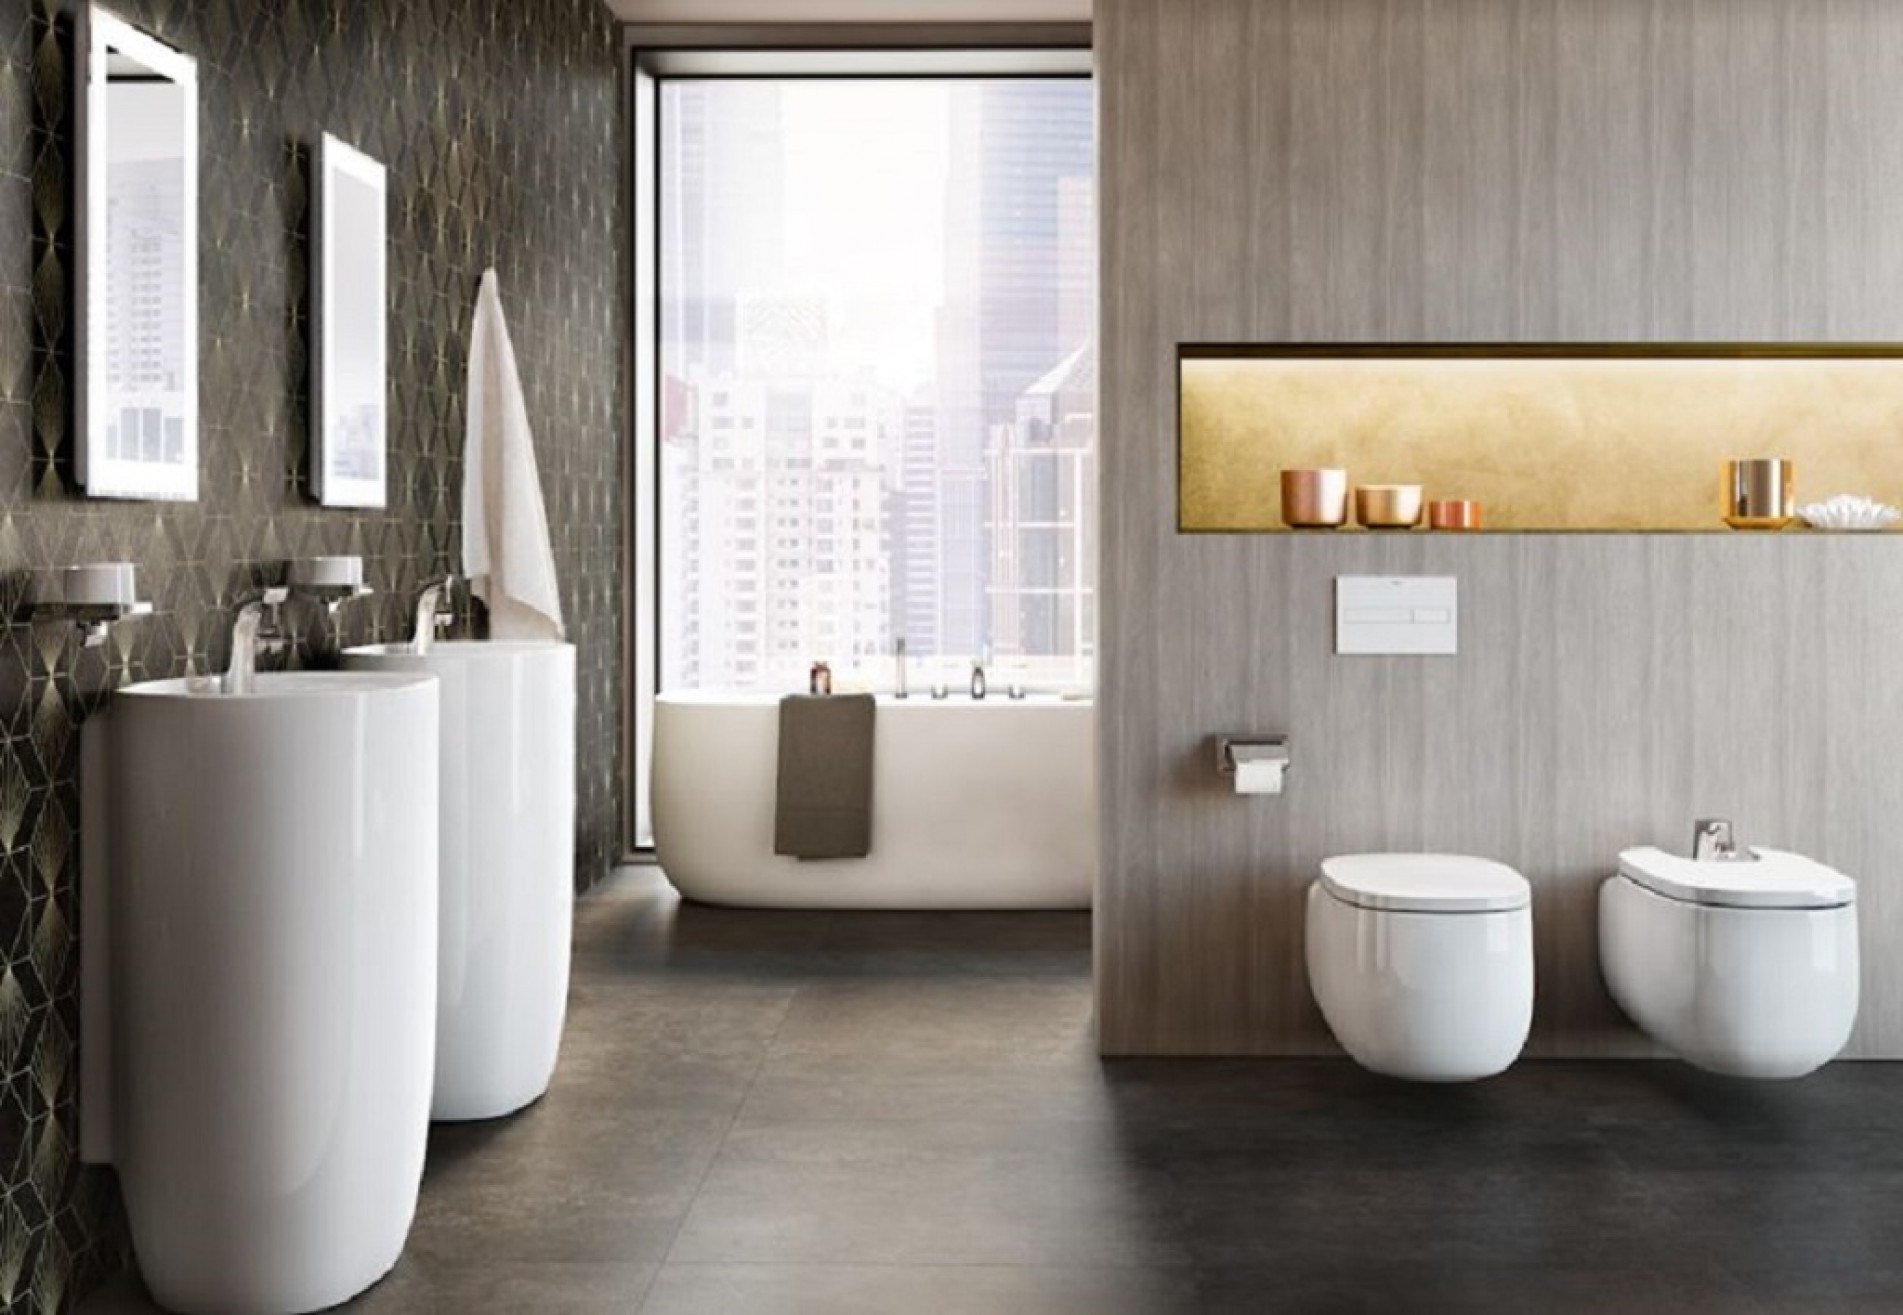 O bidê suspenso da coleção Beyond: para banheiros modernos
